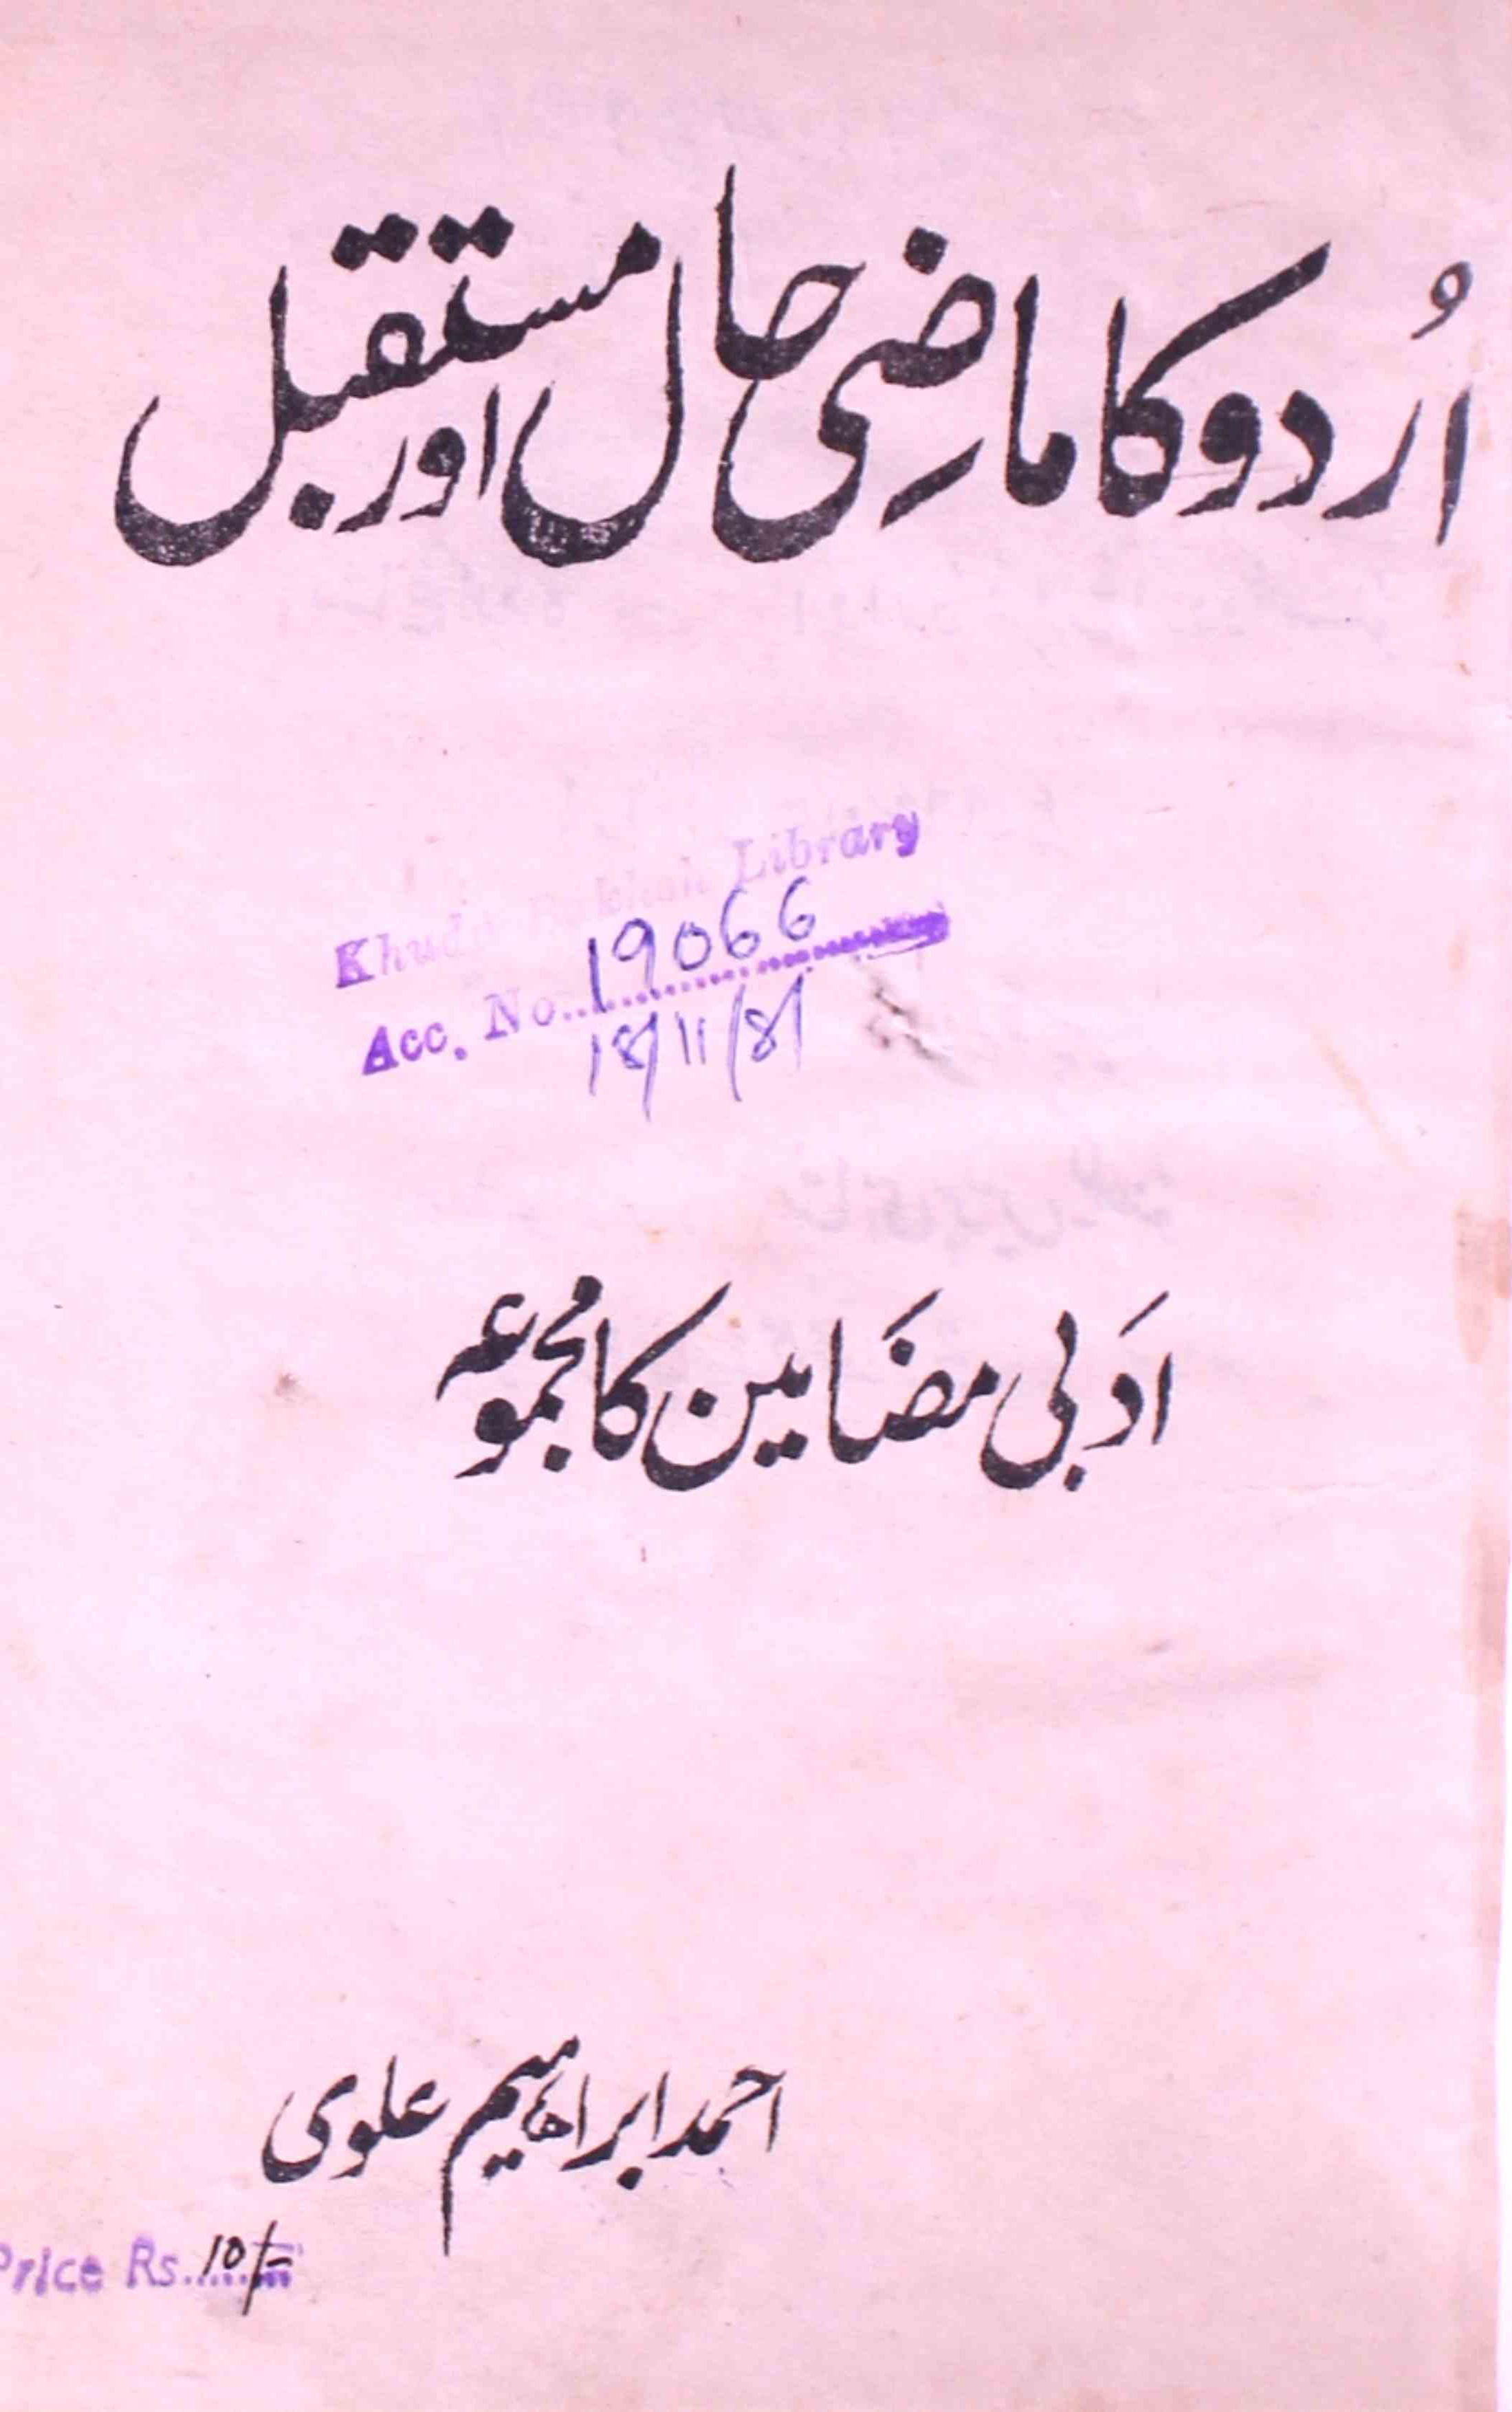 اردو کا ماضی حال اور مستقبل